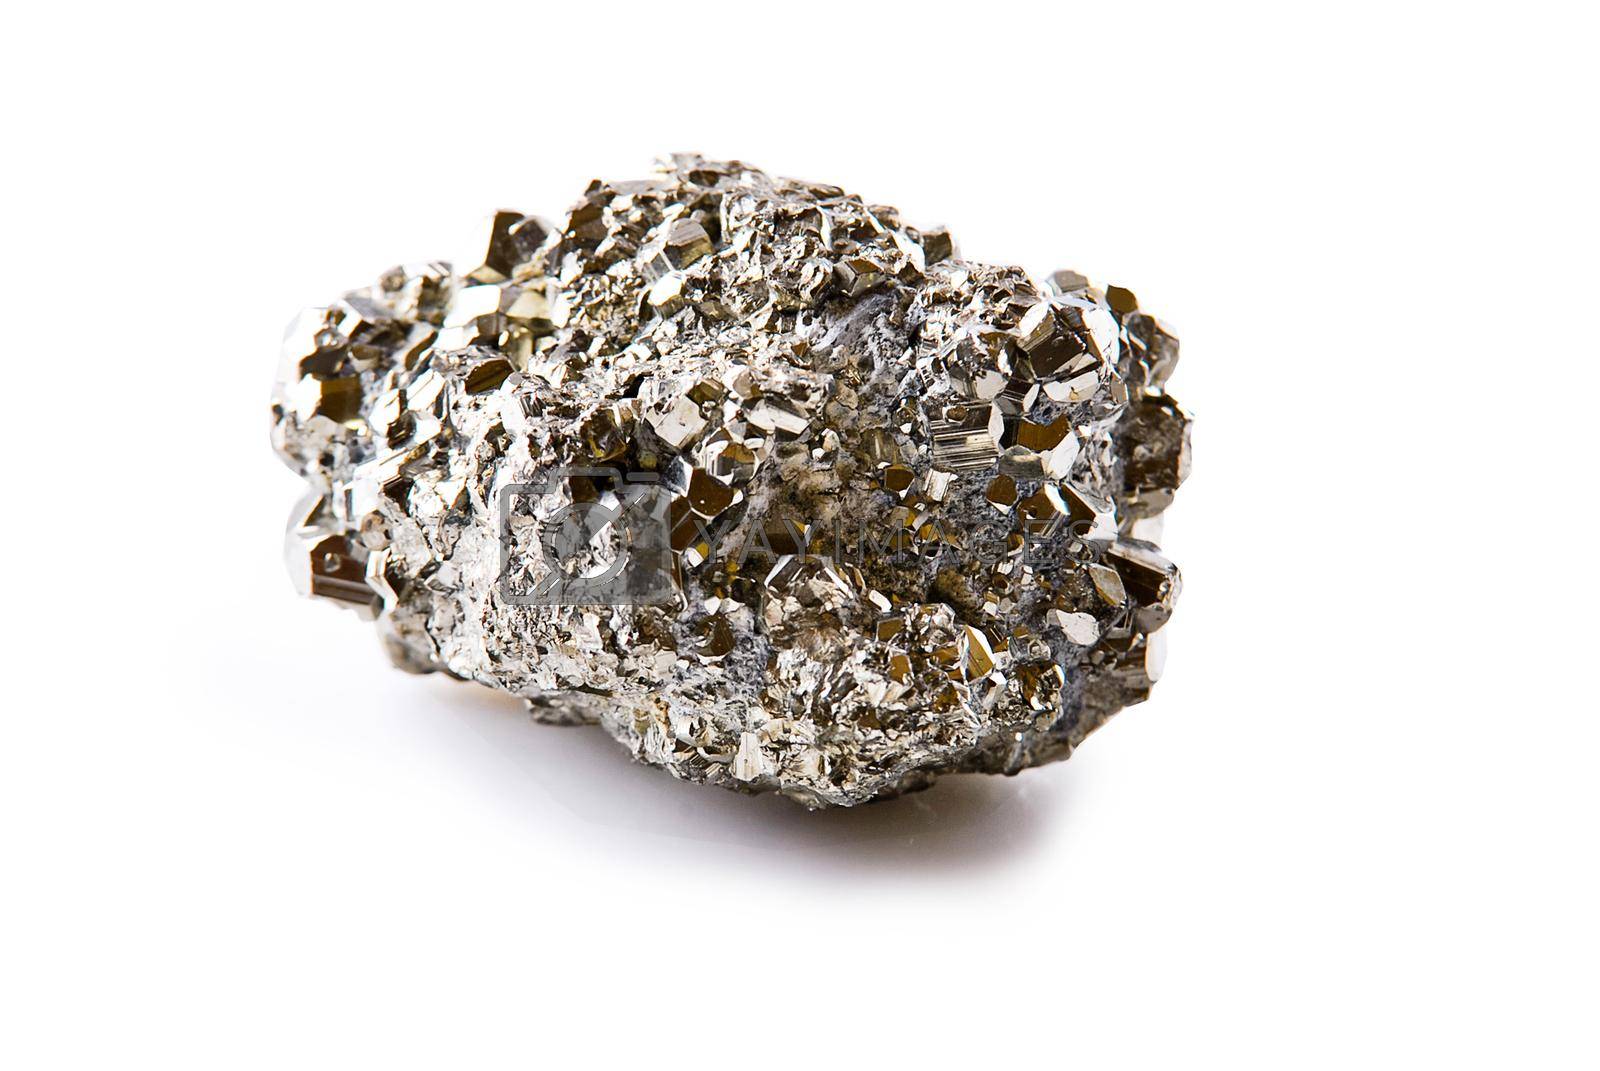 Royalty free image of pyrite stone isolated by maramorosz